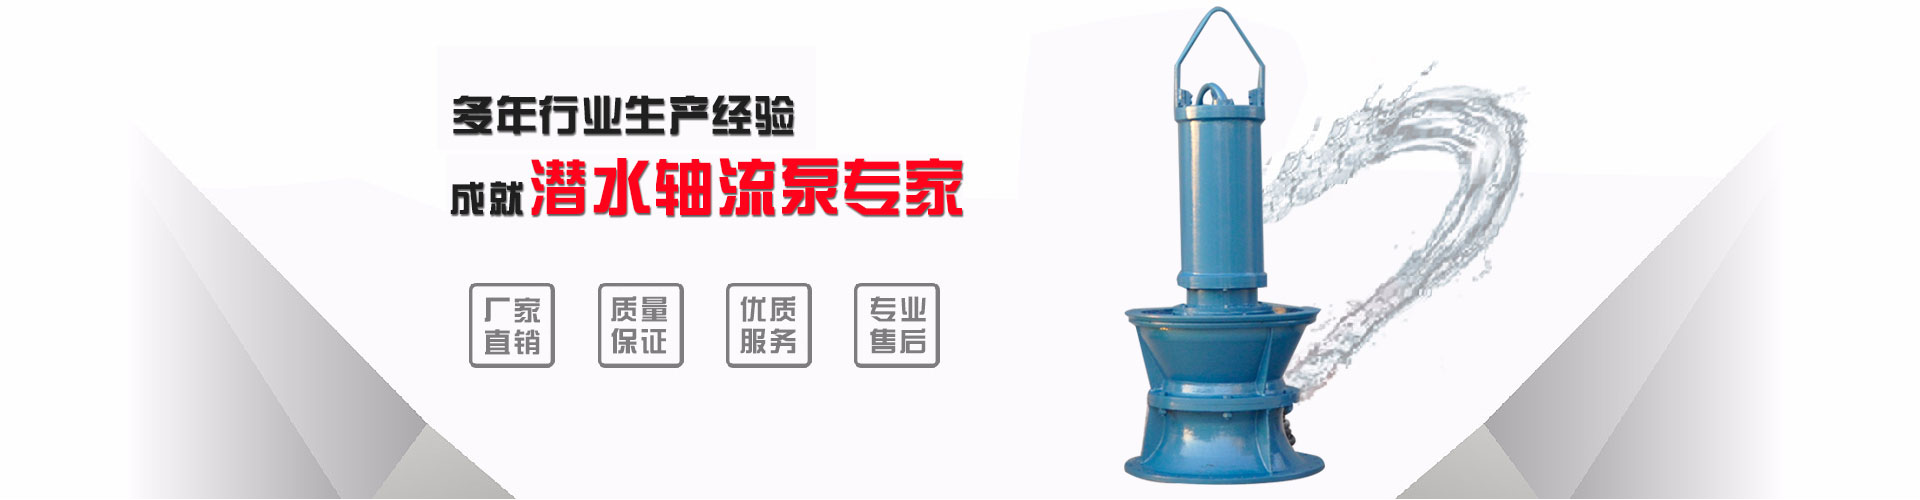 重庆800QZ-100井筒式潜水轴流泵_混流泵_一站式服务